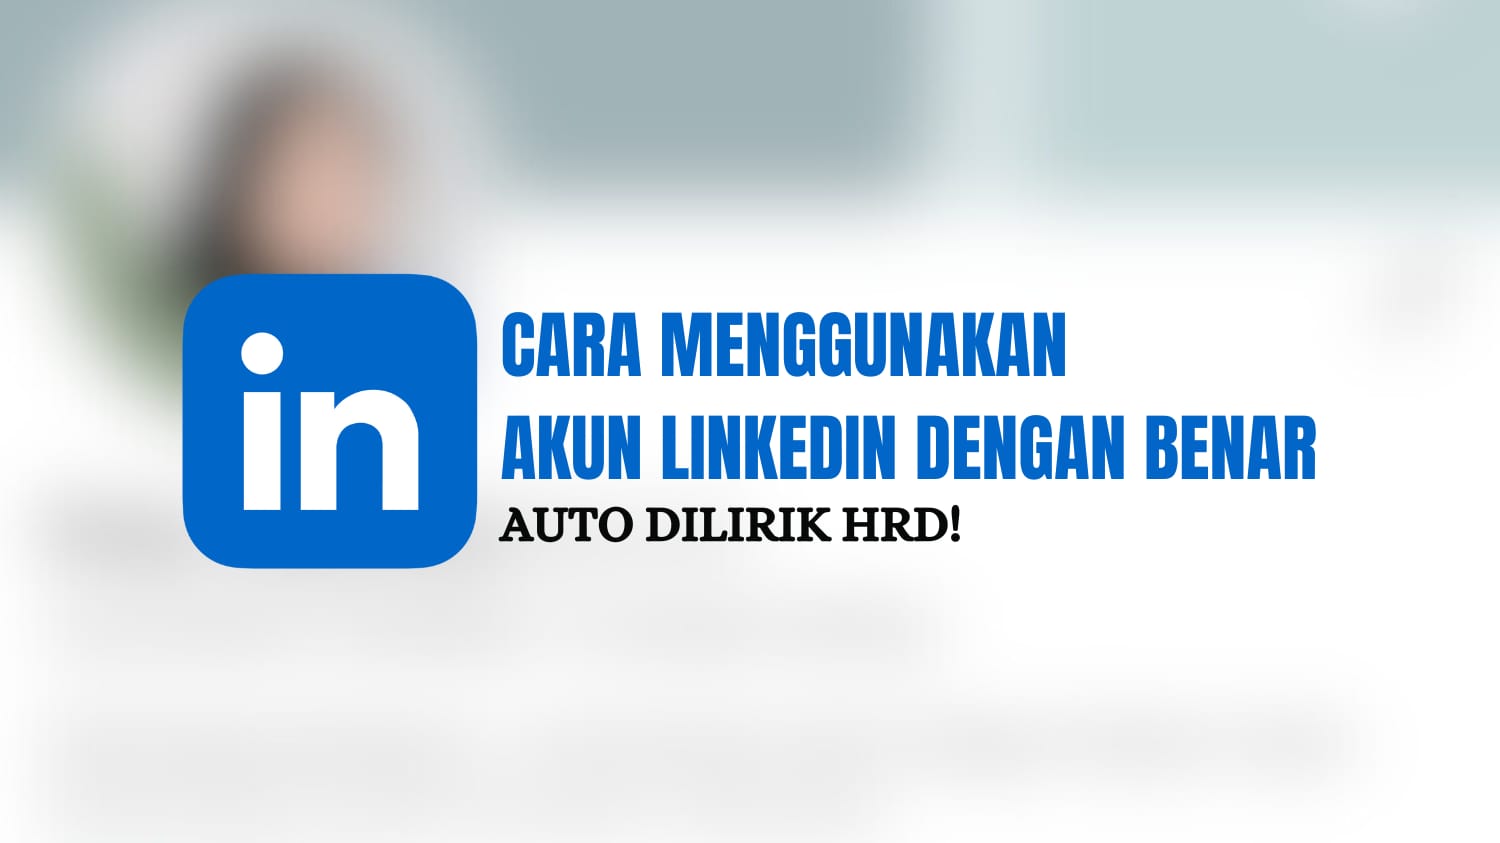 Auto Dilirik HRD! Begini Cara Menggunakan Akun LinkedIn dengan Benar